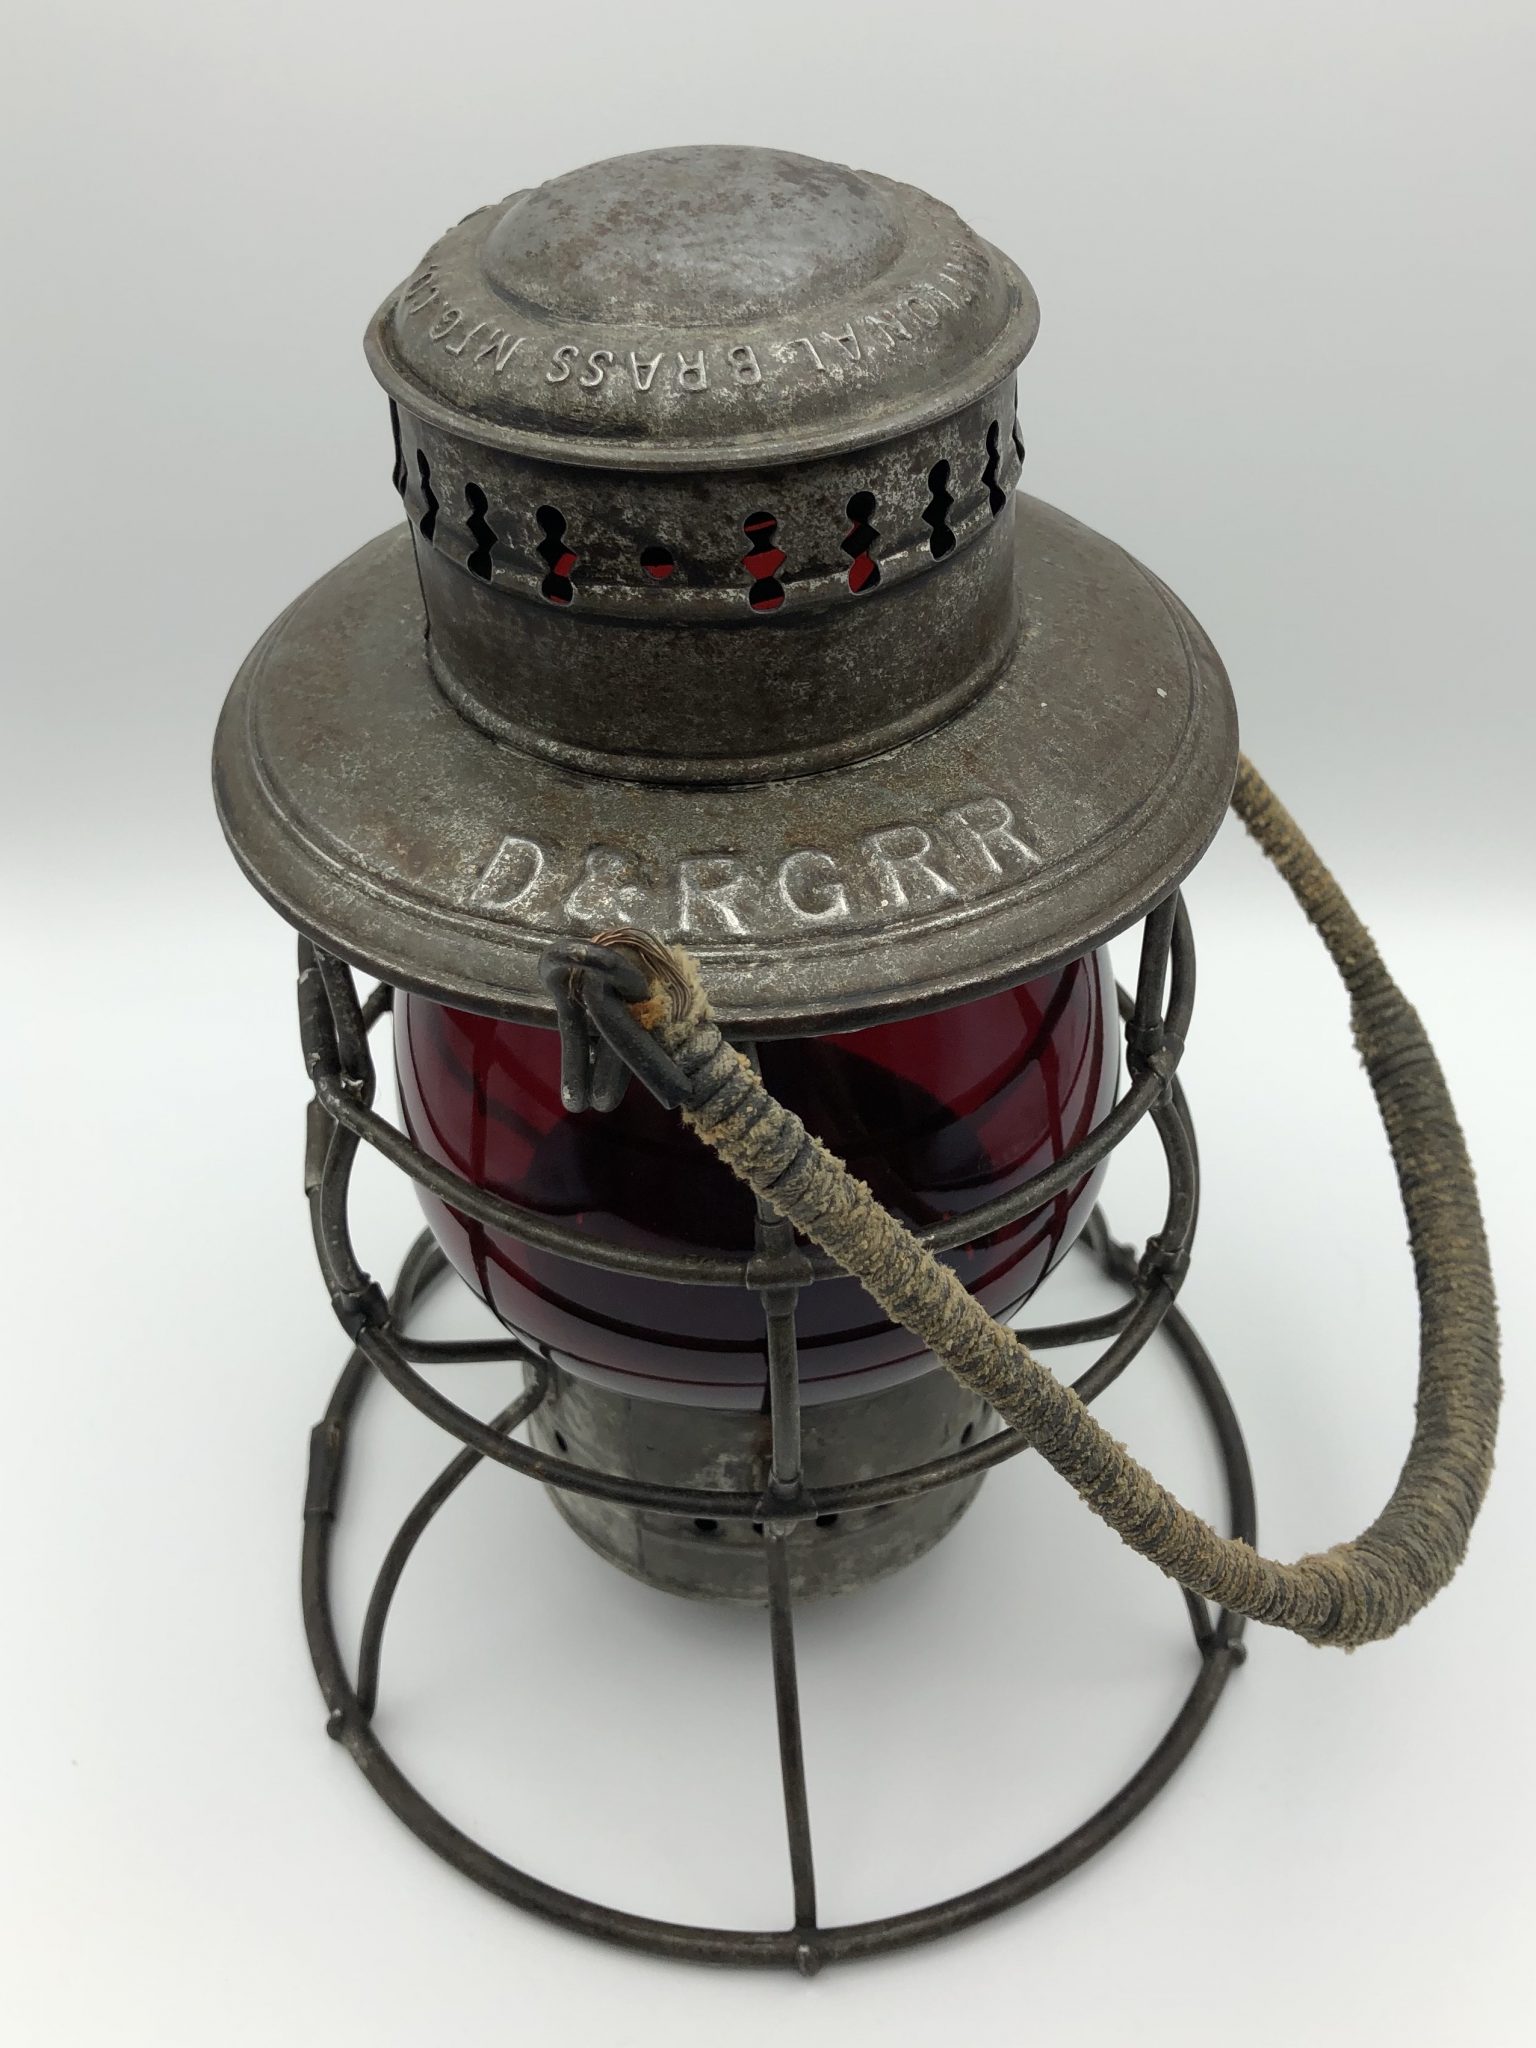 D&RGRR Railroad Lantern